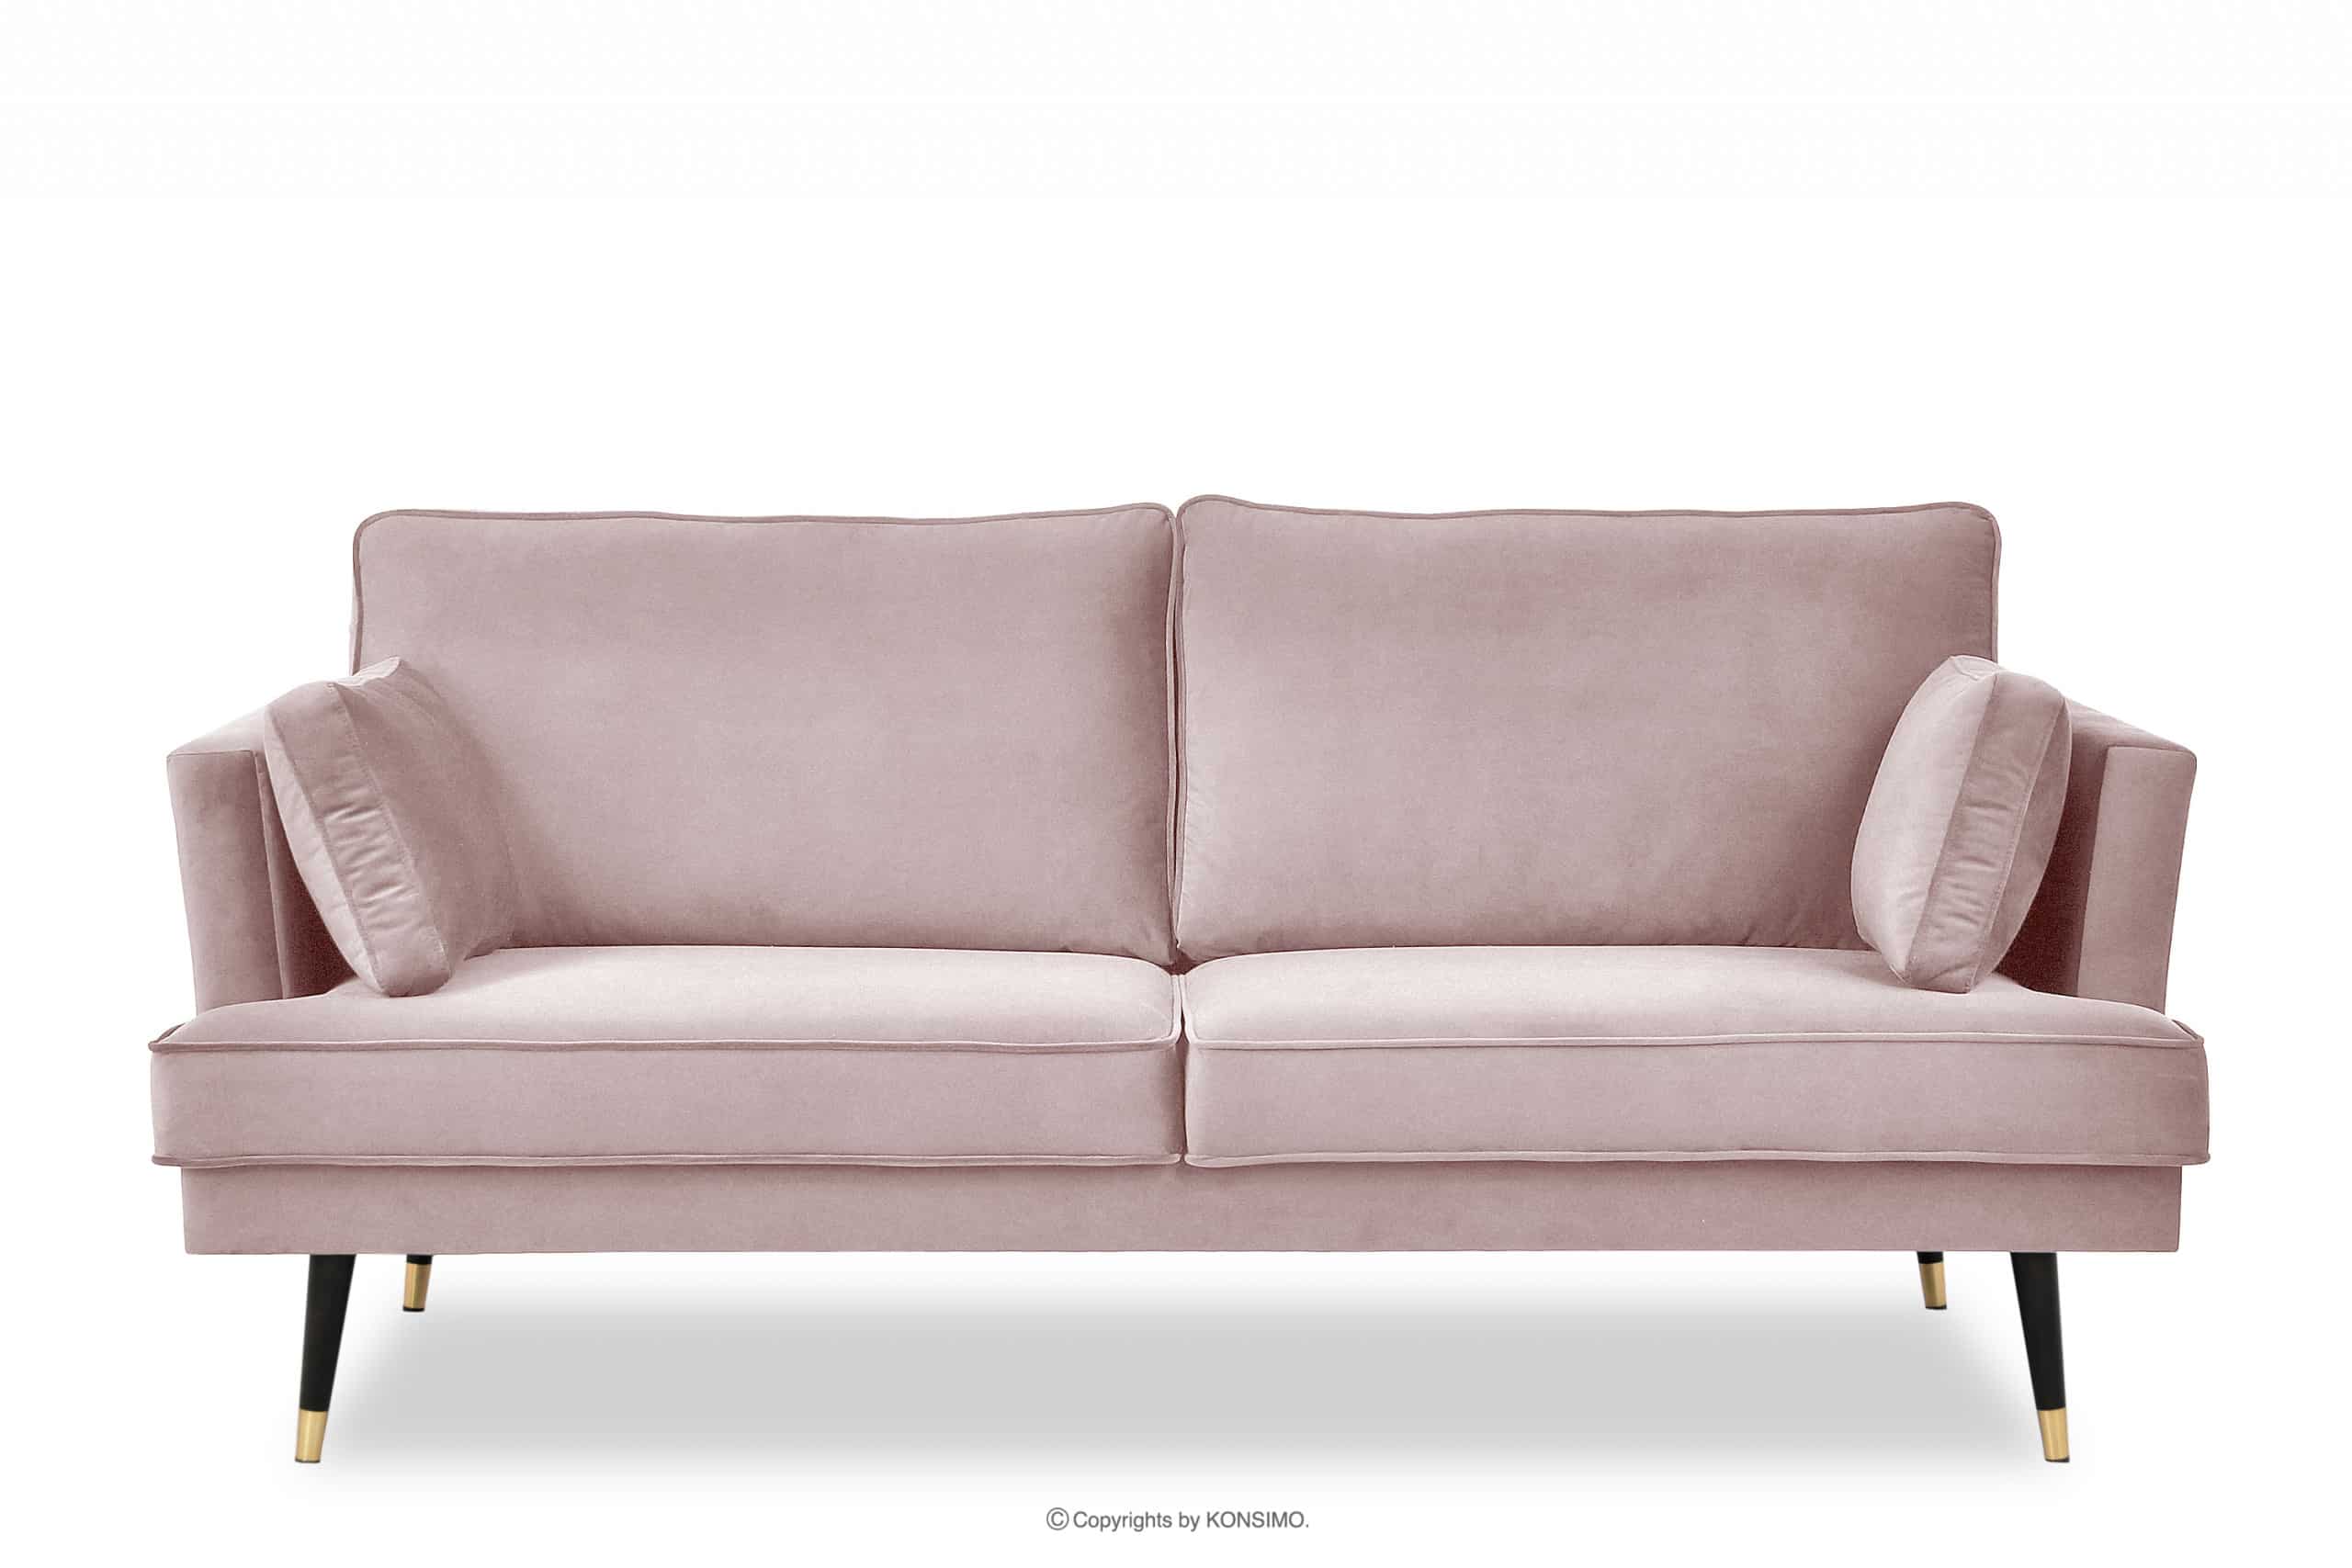 Sofa trzyosobowa welurowa glamour różowa